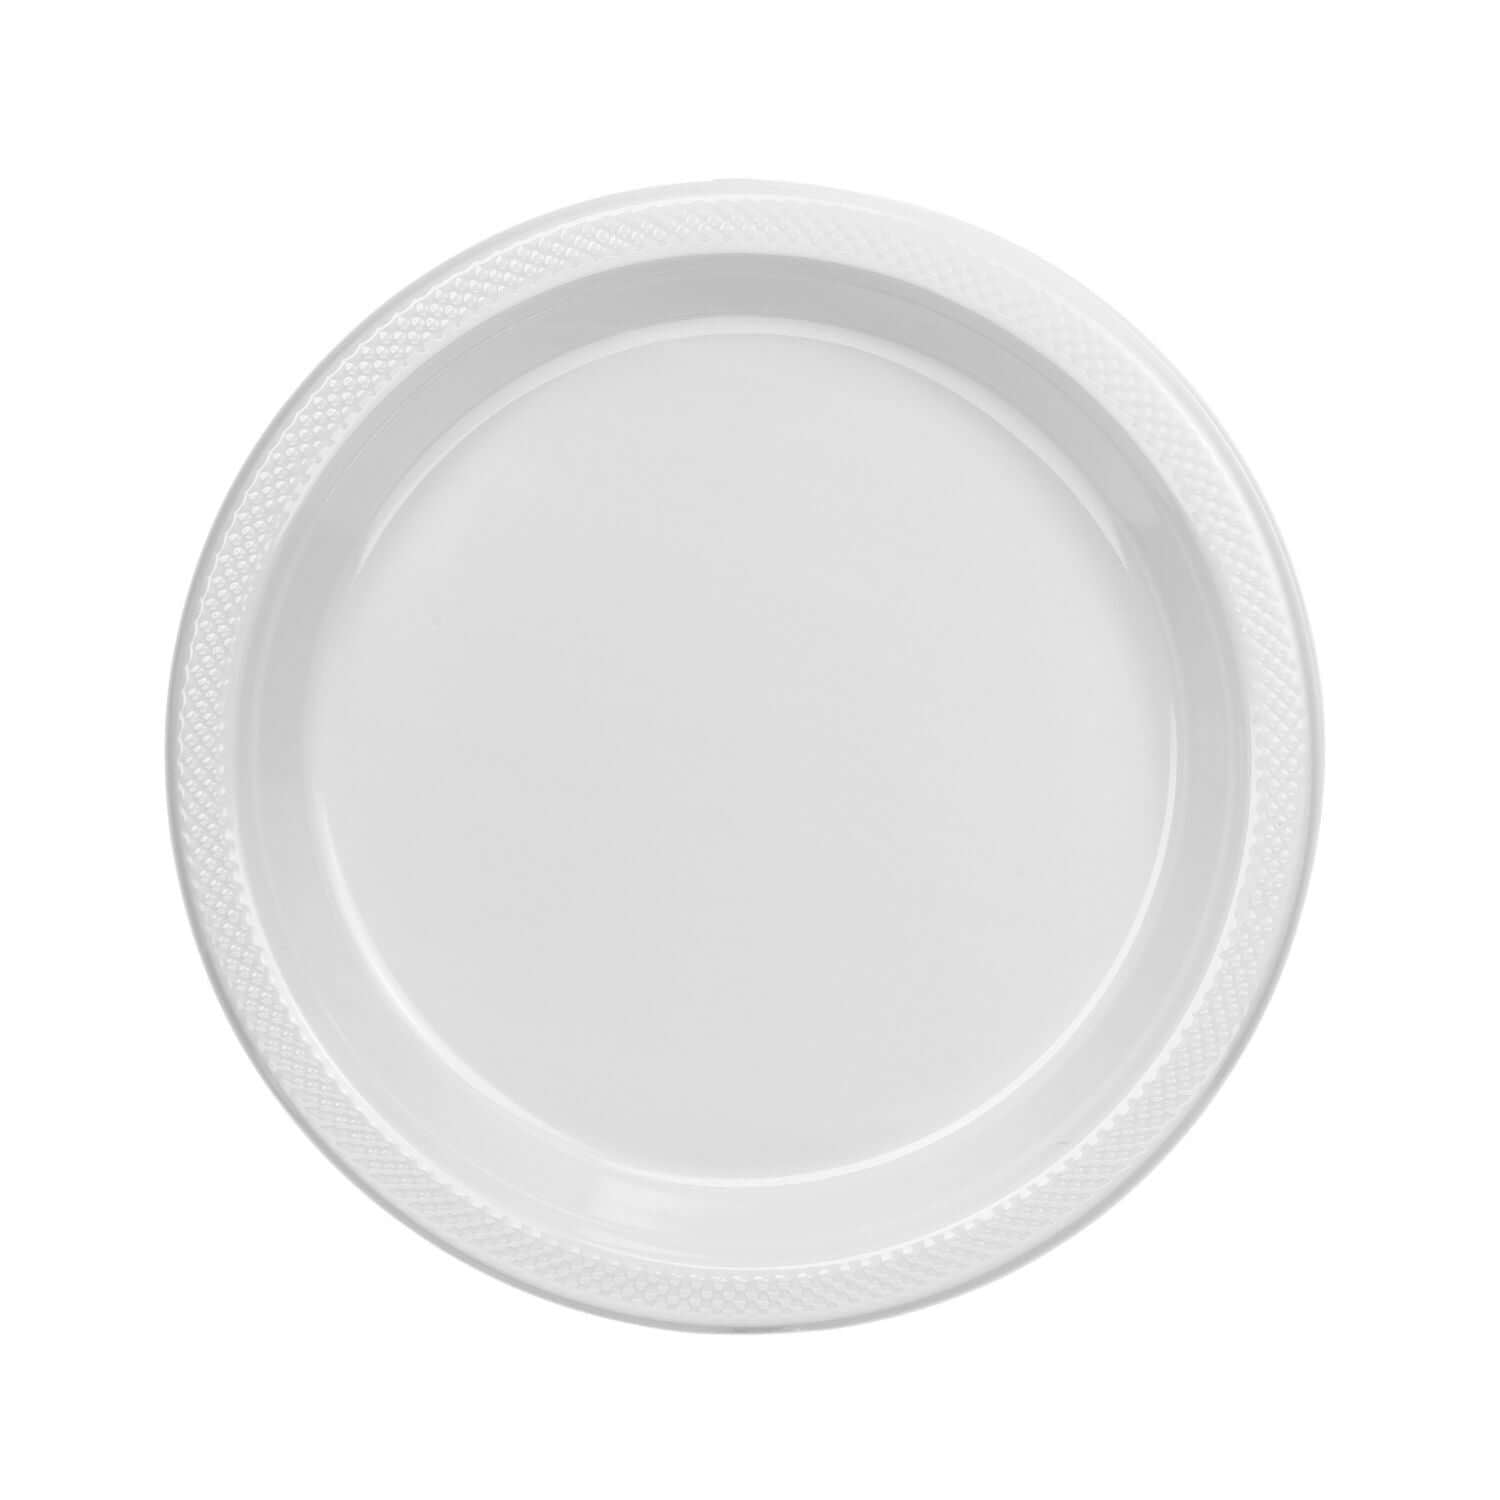 9" | White Plastic Plates | 600 Count - Yom Tov Settings